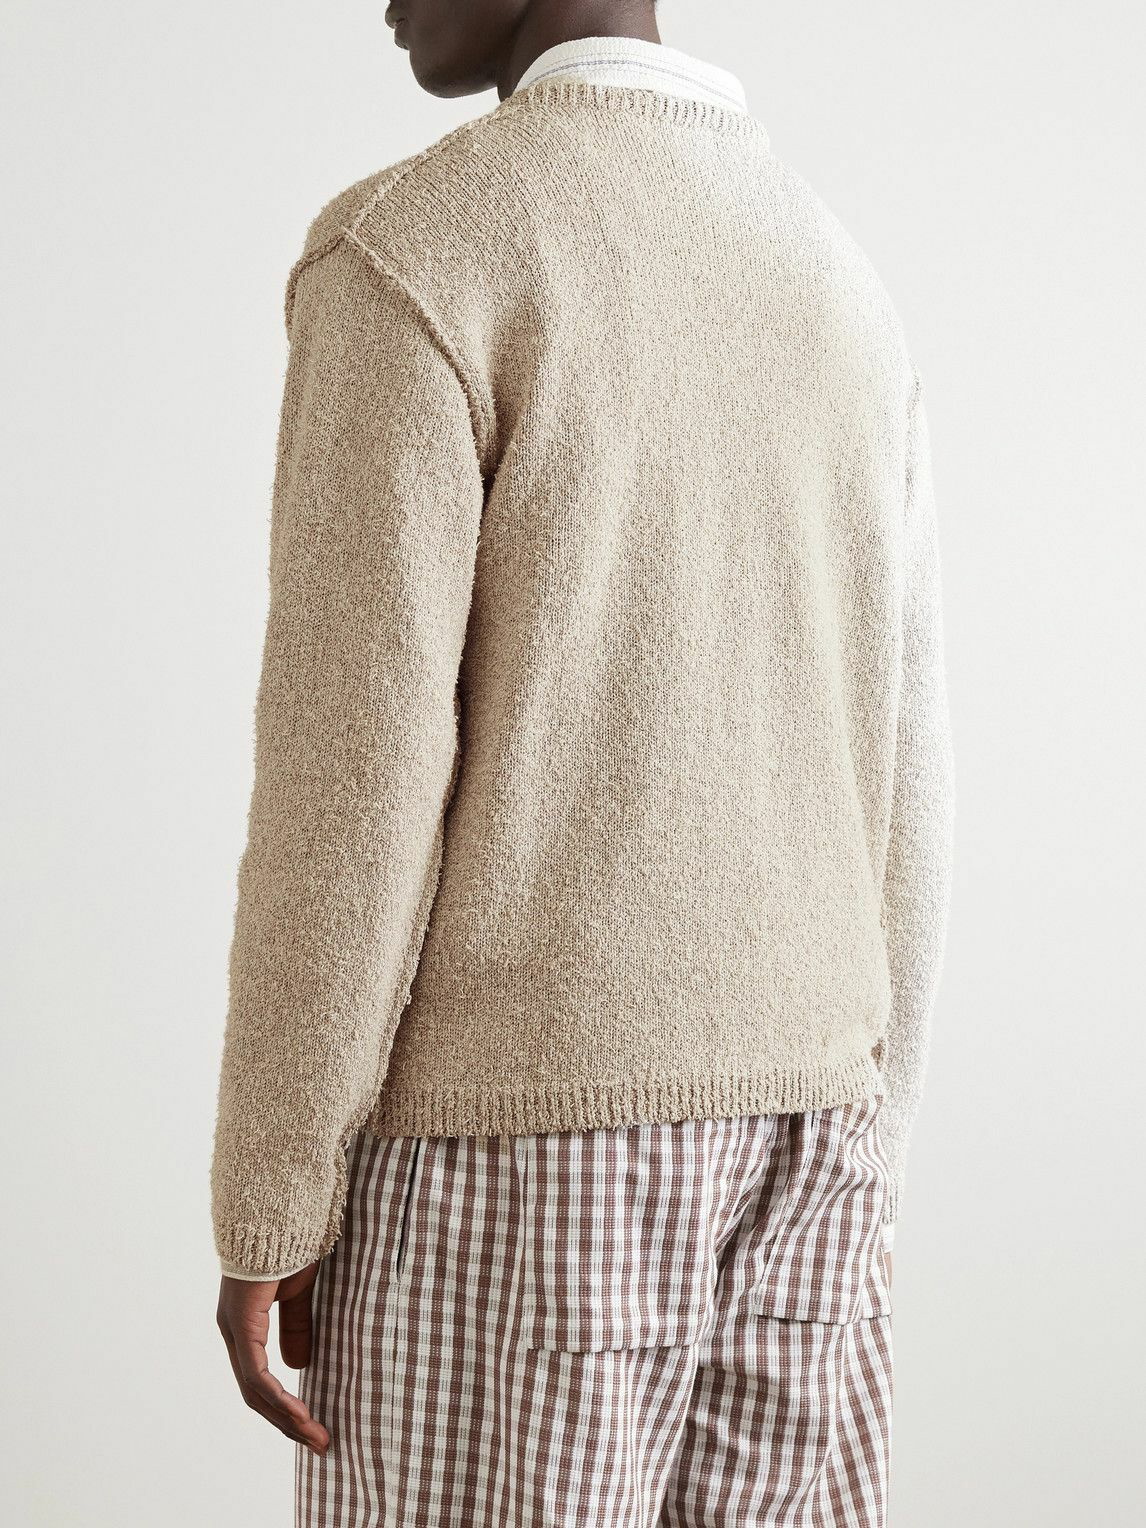 mfpen - Bouclé-Knit Sweater - White mfpen